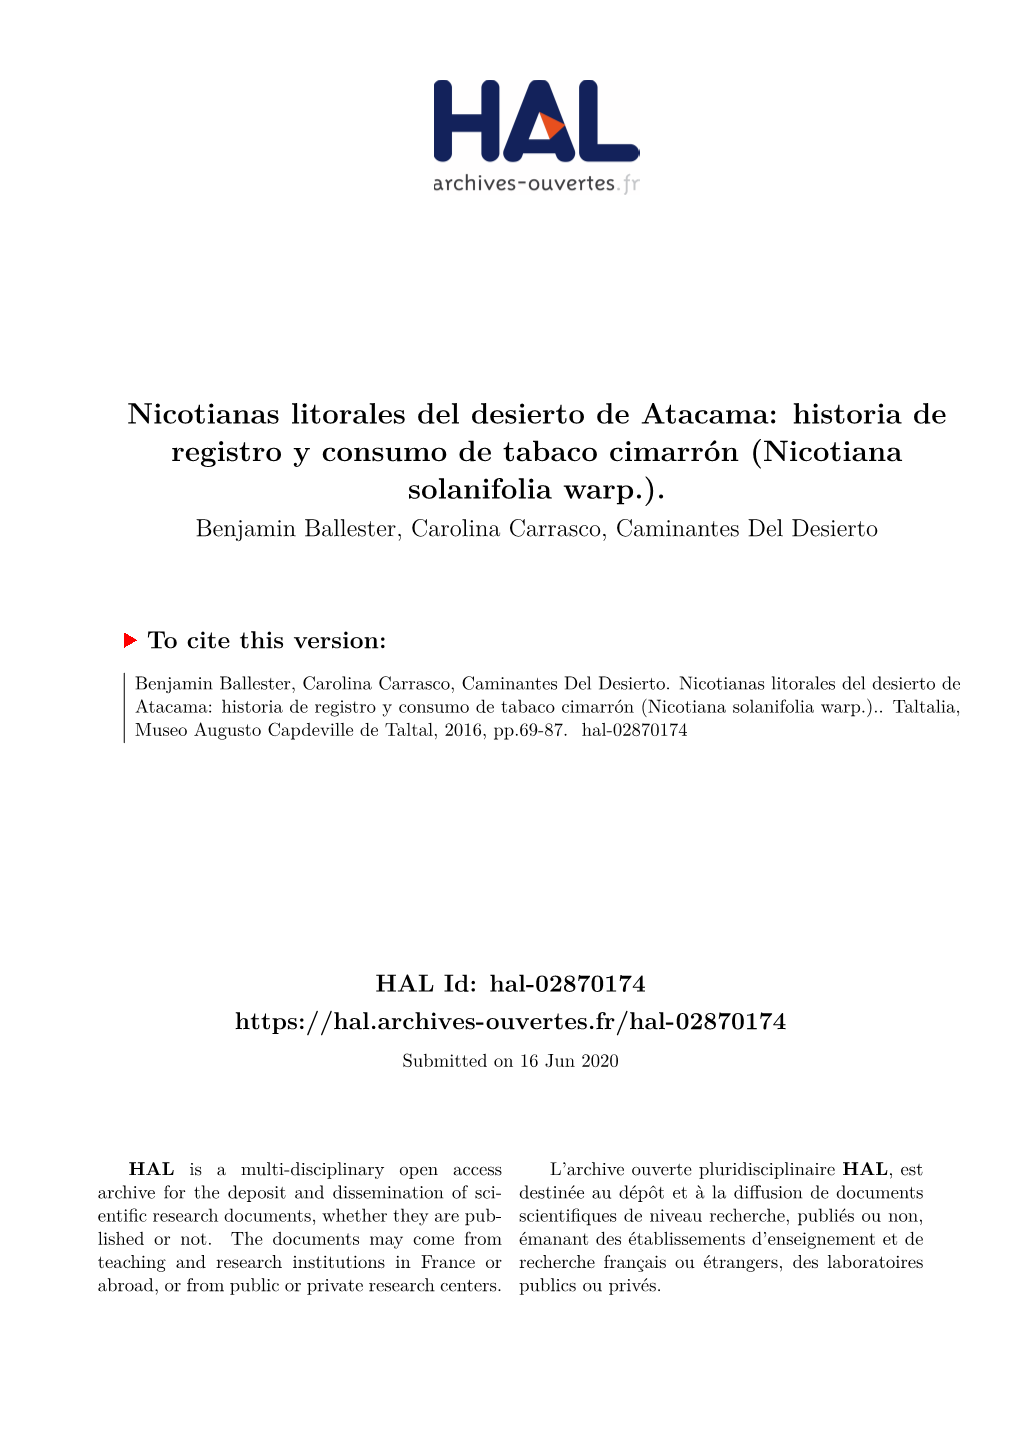 Nicotianas Litorales Del Desierto De Atacama: Historia De Registro Y Consumo De Tabaco Cimarrón (Nicotiana Solanifolia Warp.)